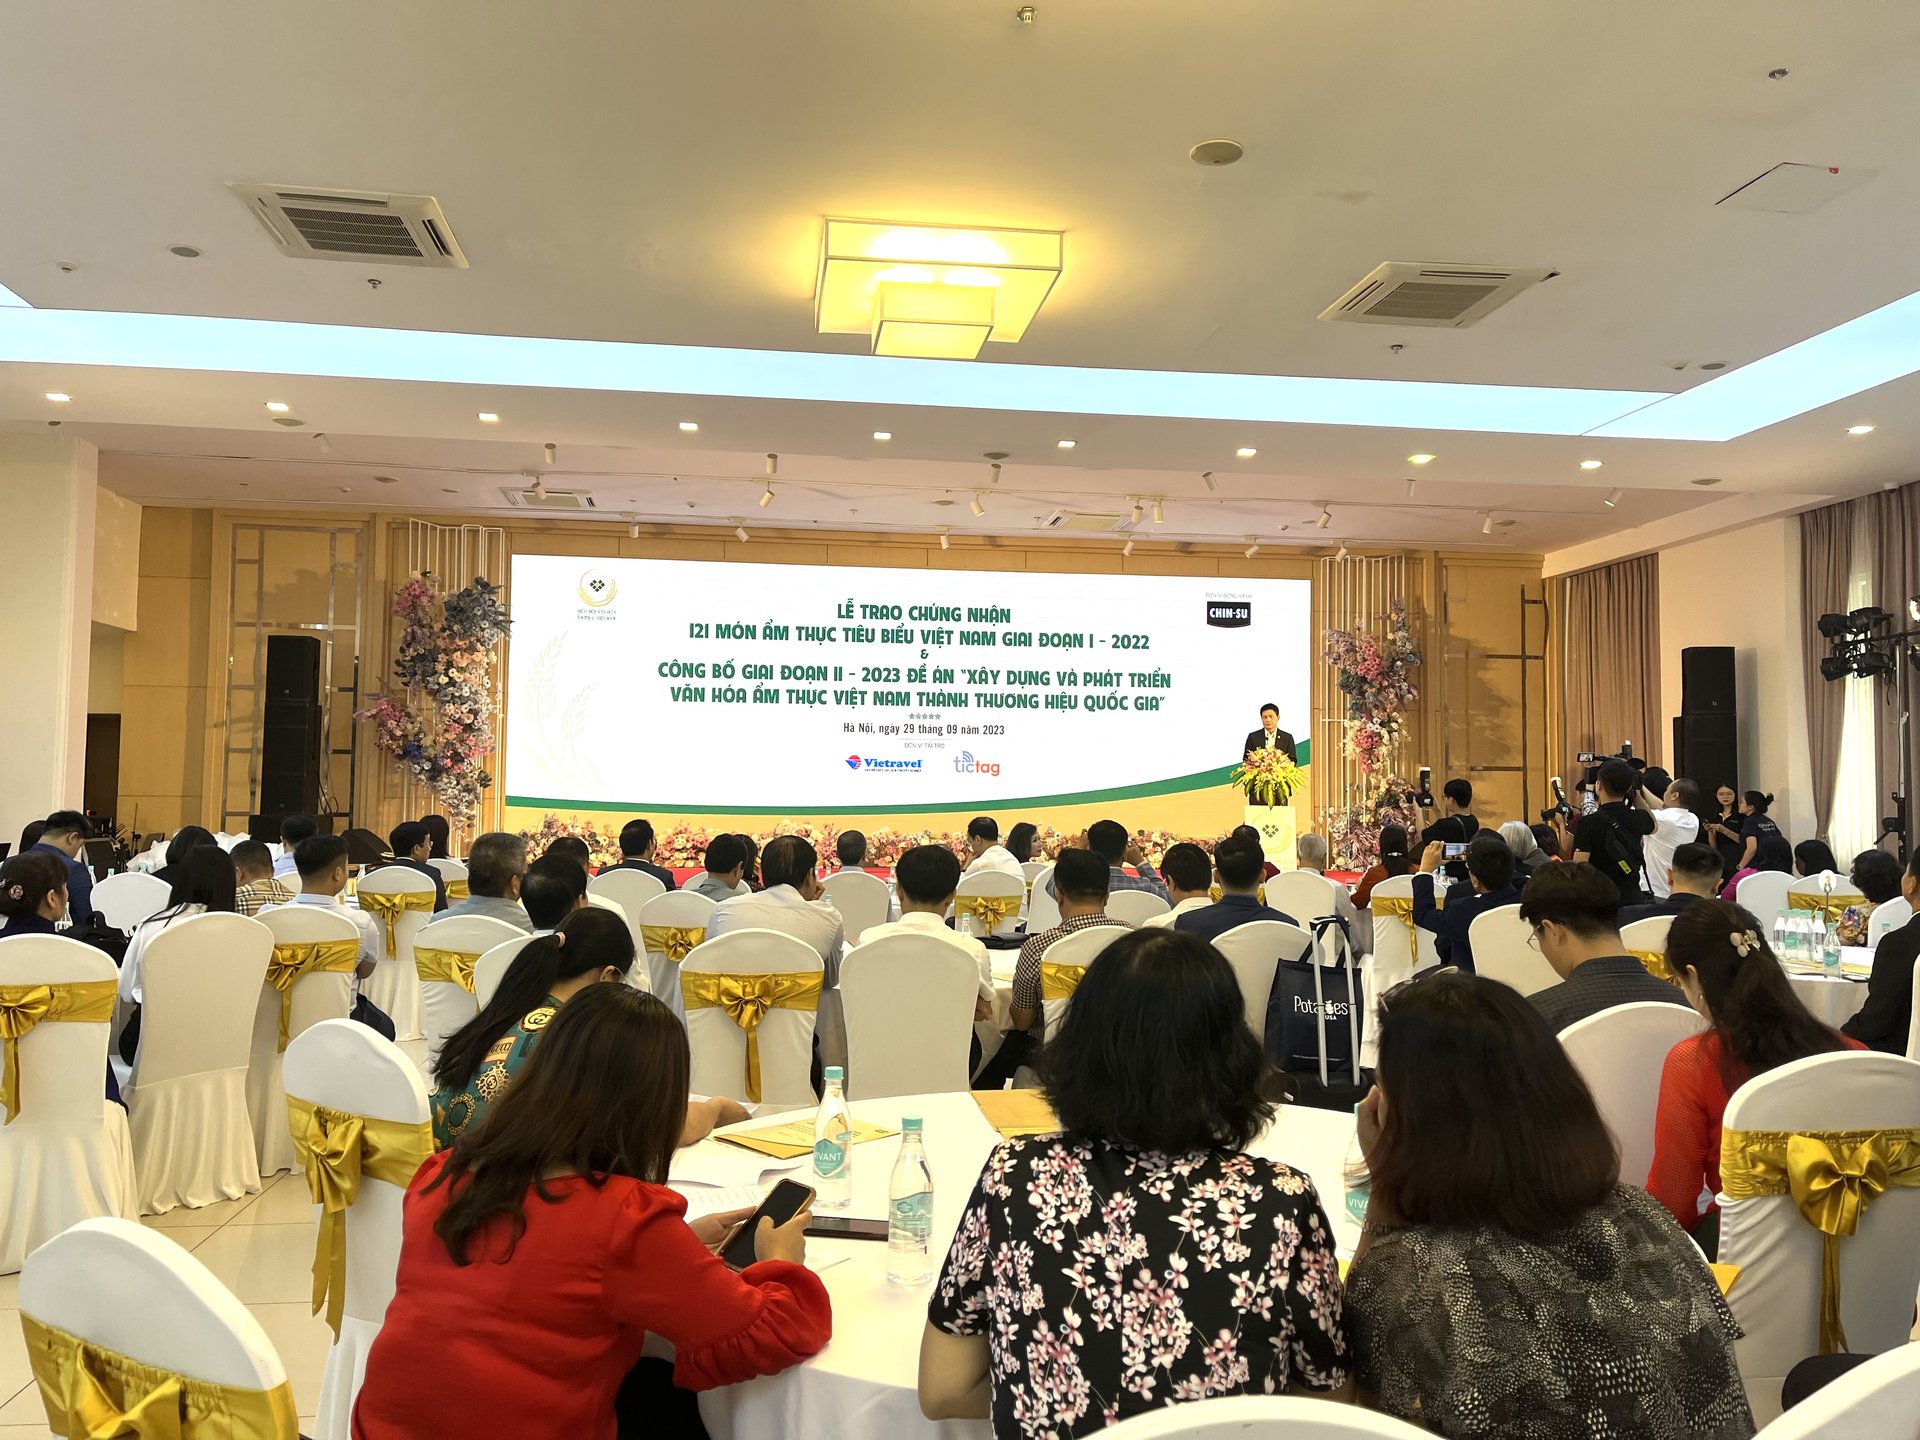 Lễ trao chứng nhận 121 món ẩm thực tiêu biểu giai đoạn I-2022 do Hiệp hội Văn hóa Ẩm thực Việt Nam (VCCA) tổ chức sáng 29/9 tại Hà Nội. Ảnh: Hồng Thắm.